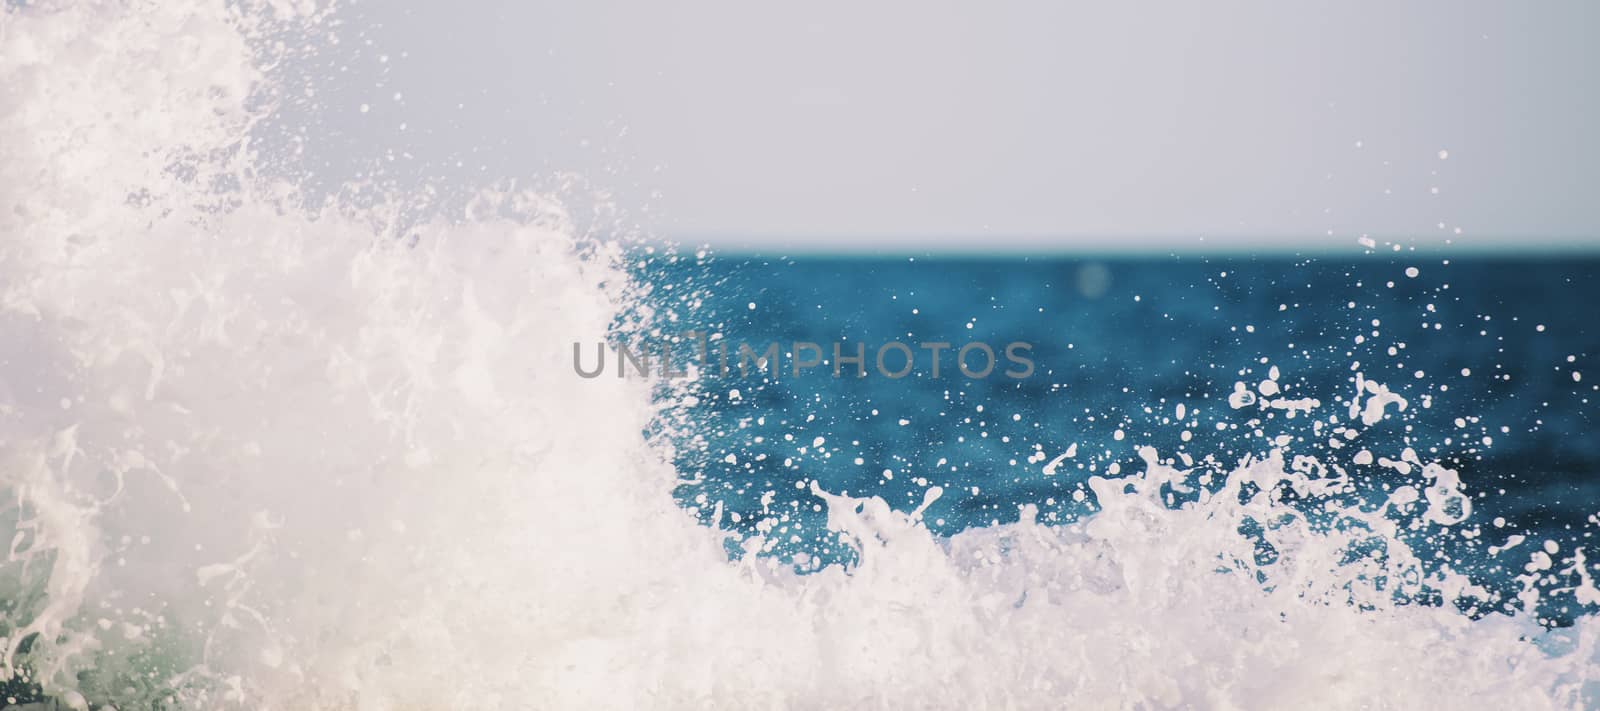 Waves at Kings Beach, Queensland by artistrobd